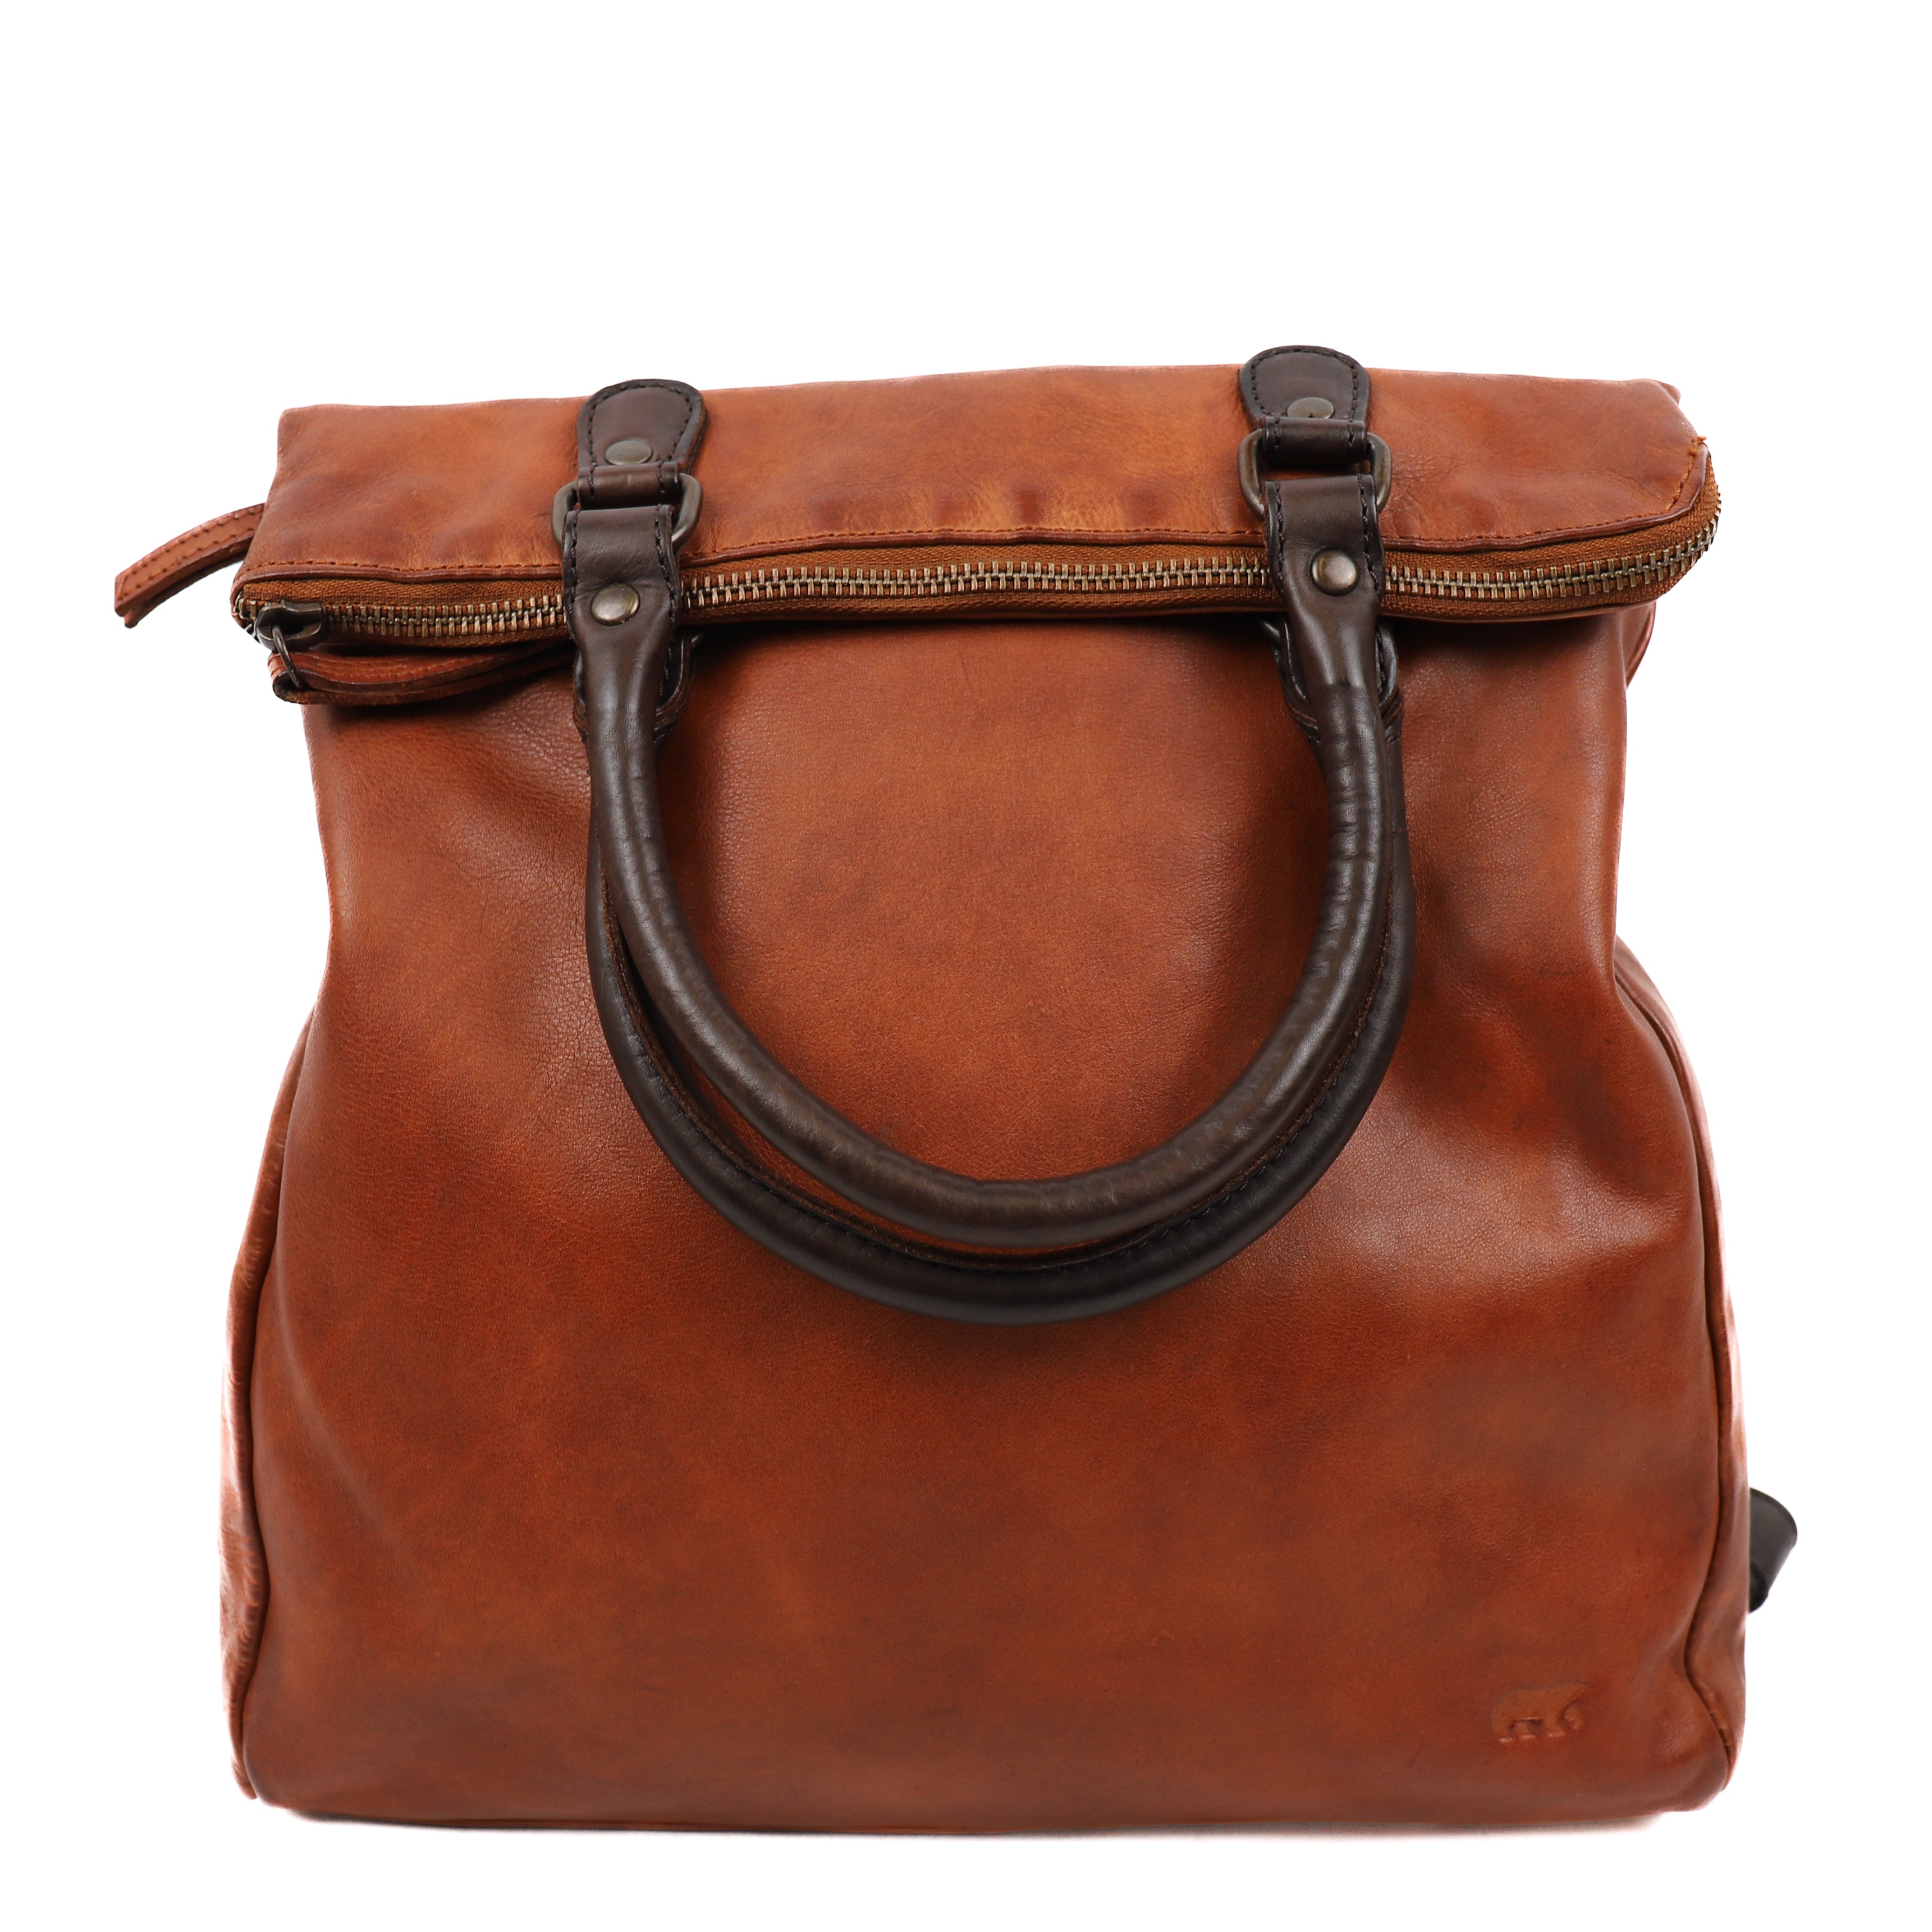 Backpack 'Evi' cognac/brown